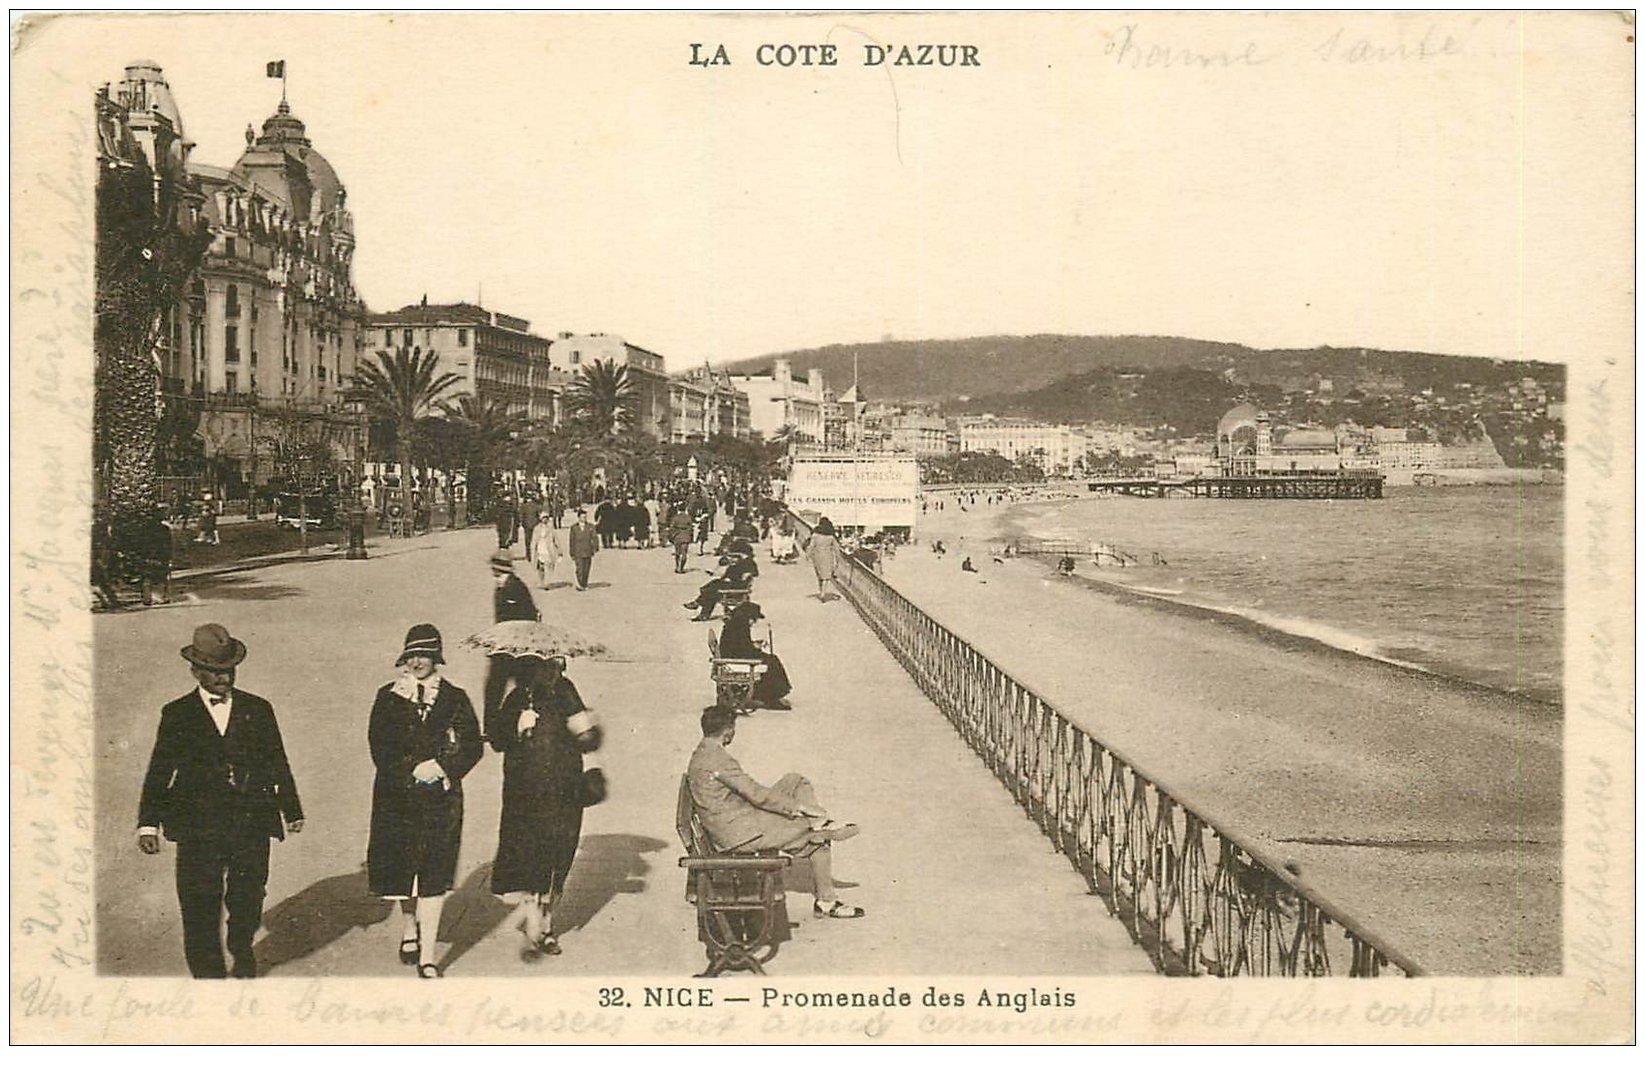 Caussade - La promenade - Carte postale ancienne et vue d'Hier et  Aujourd'hui - Geneanet